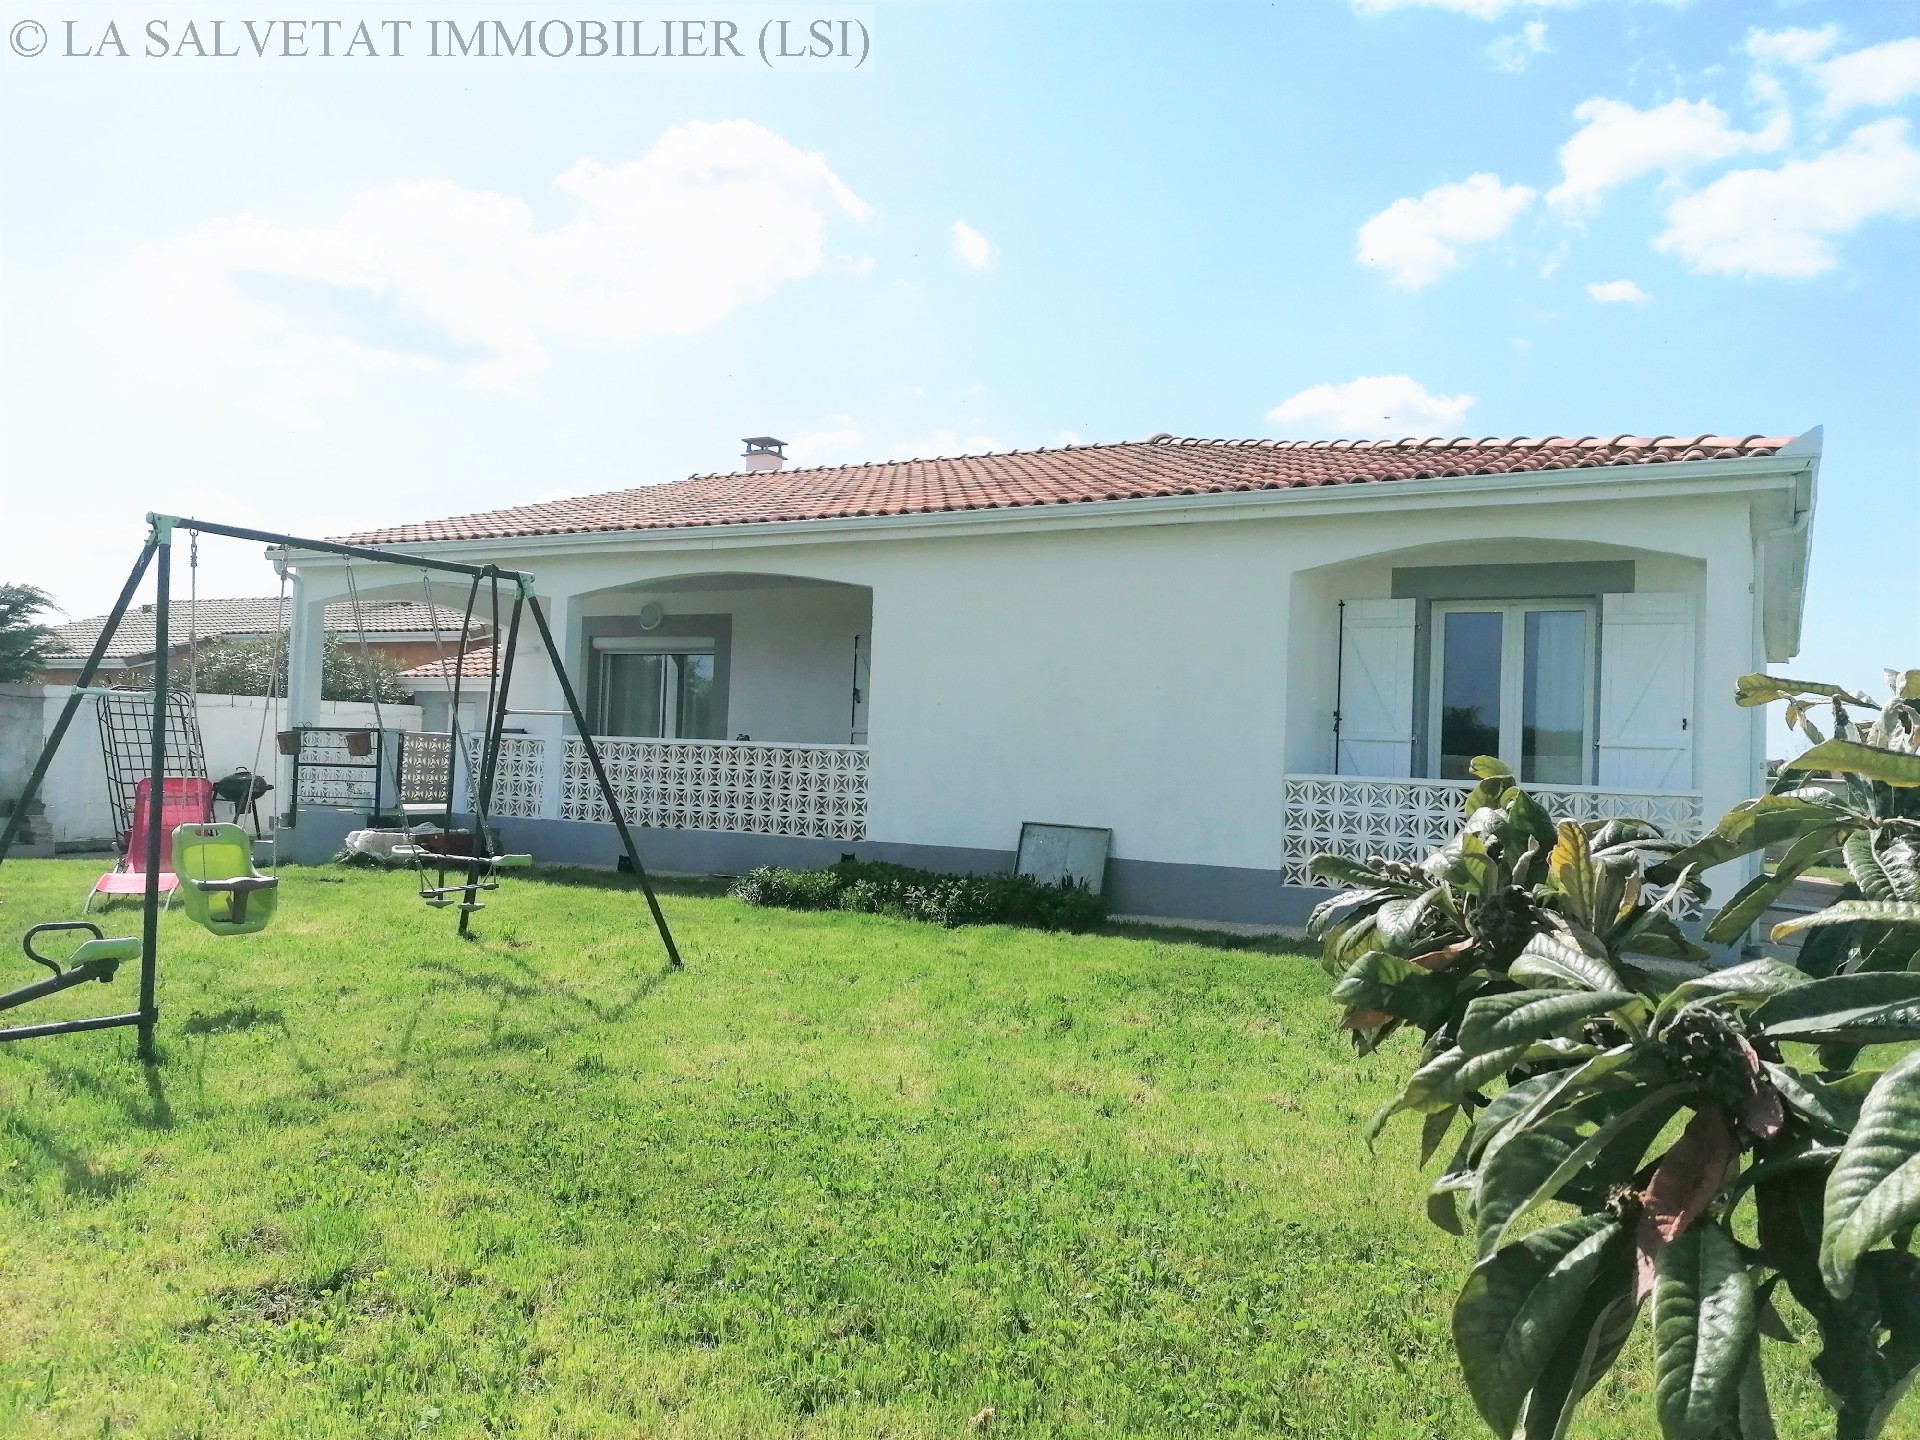 Vente maison-villa - FONTENILLES<br>148 m², 6 pièces